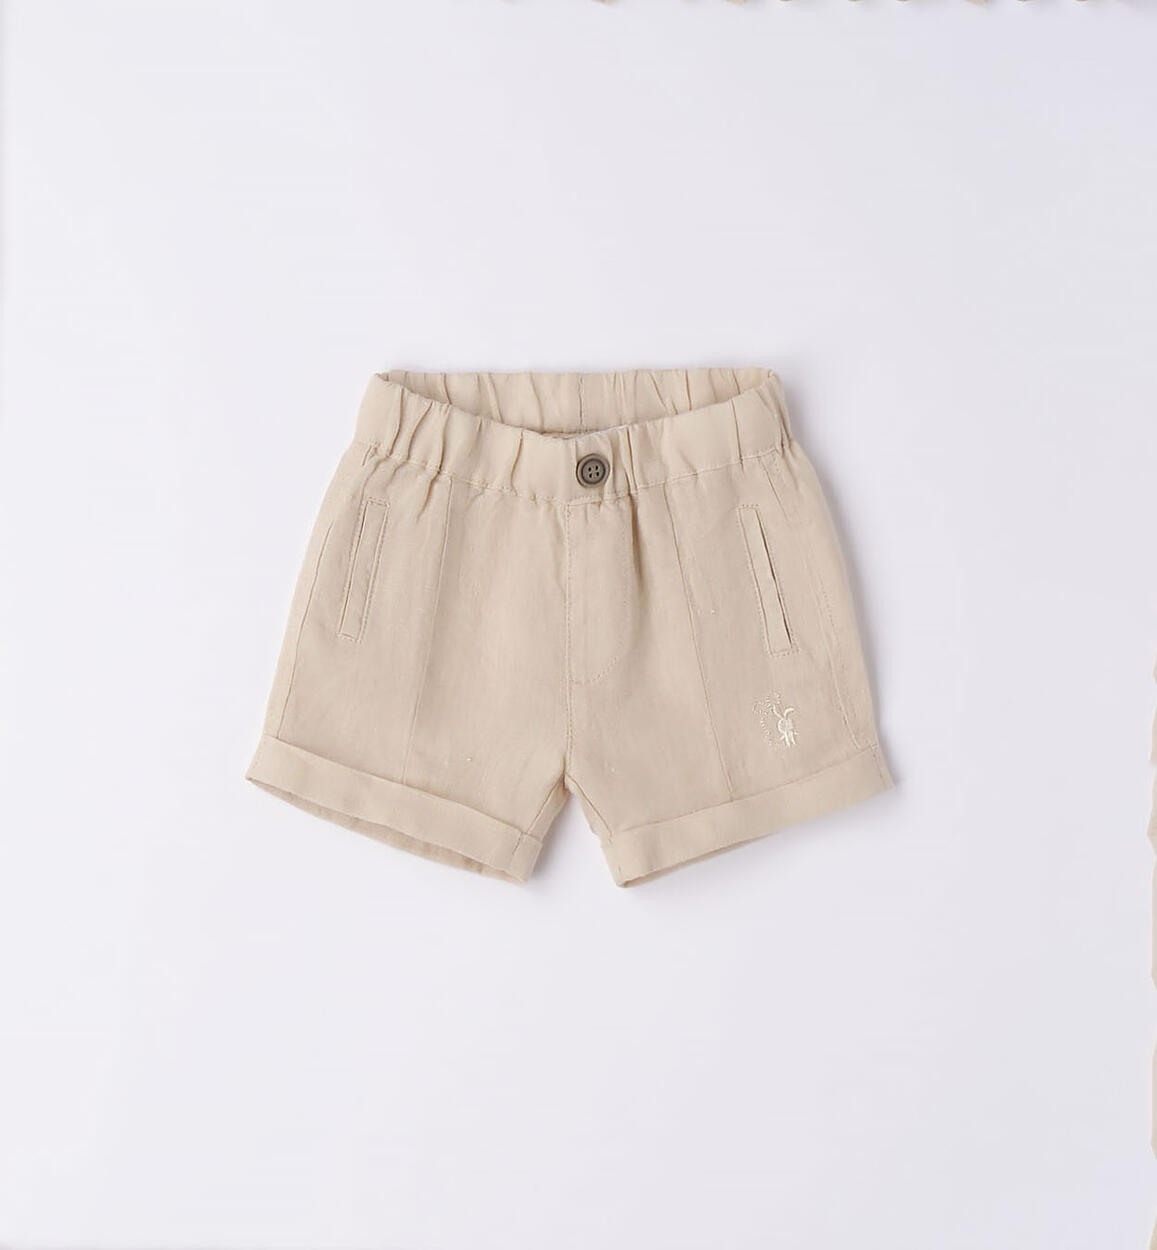 Elegante pantalone corto neonato in lino BEIGE iDO